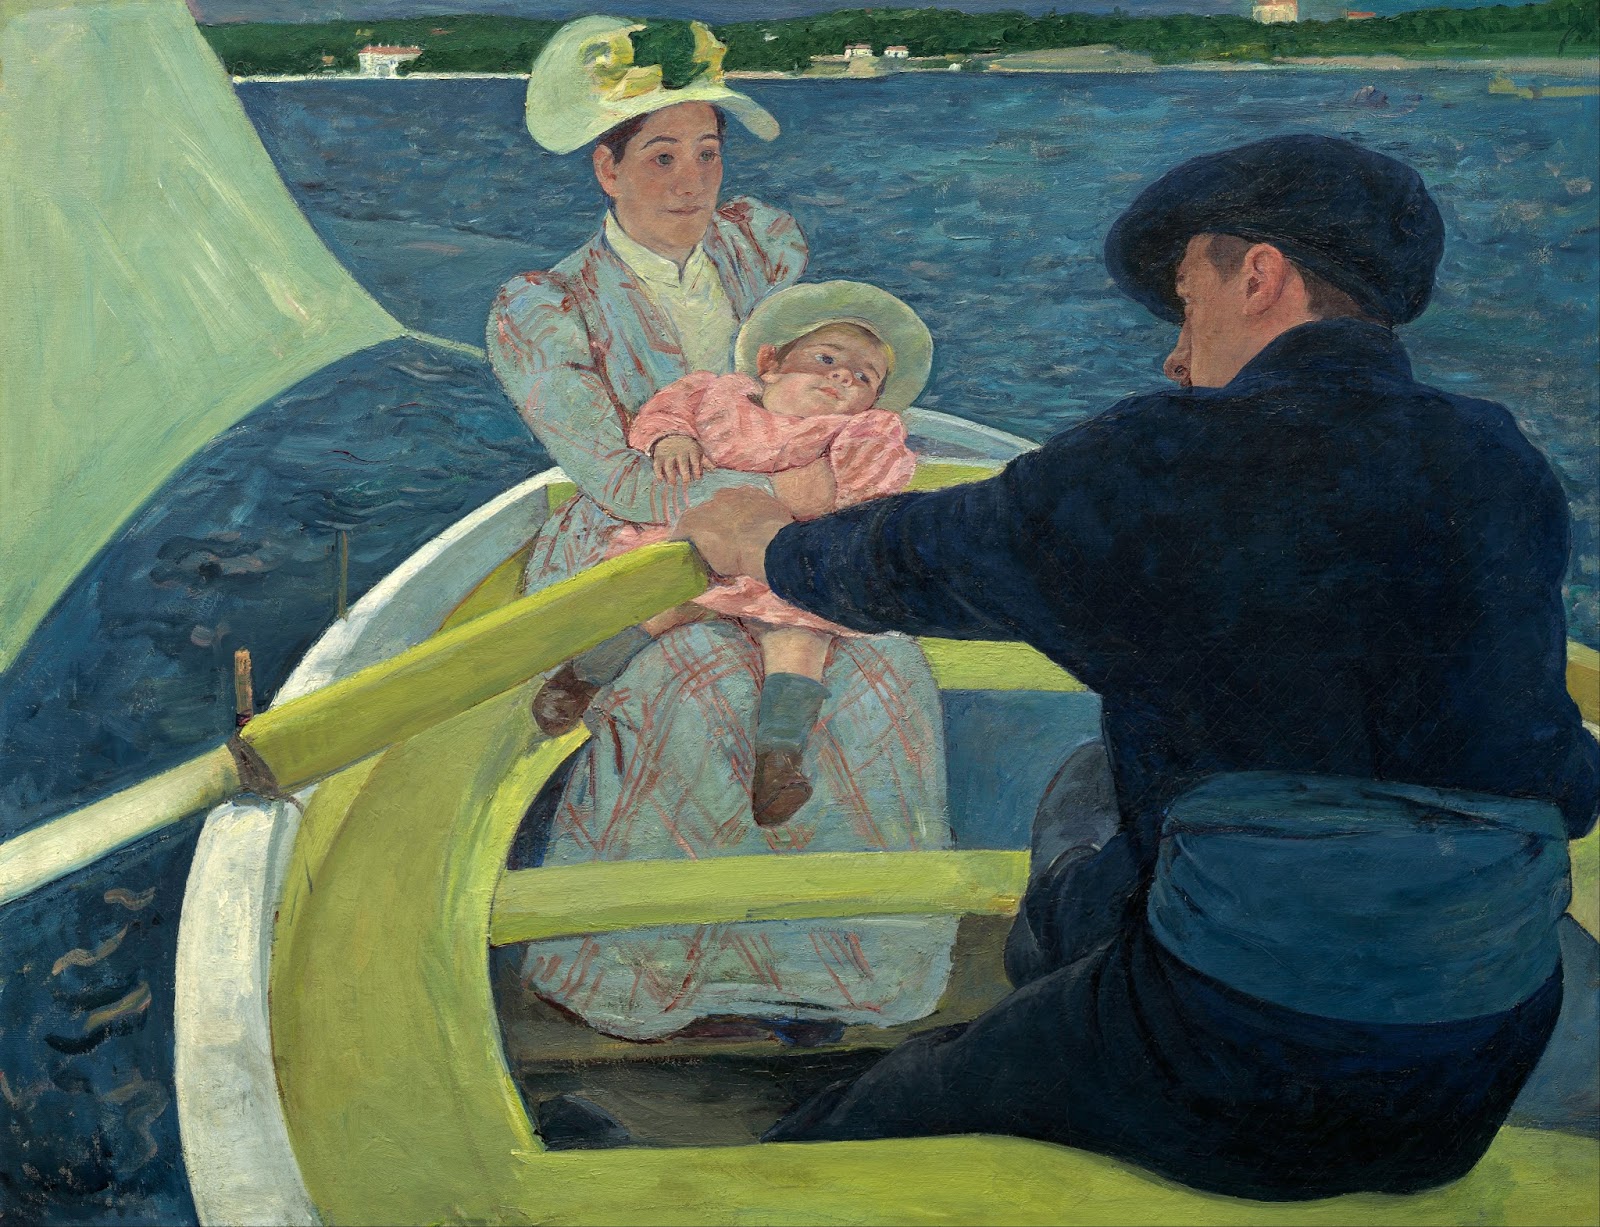 Катание в лодке by Мэри Кассат - 1893–1894 - 90 x 117 см 